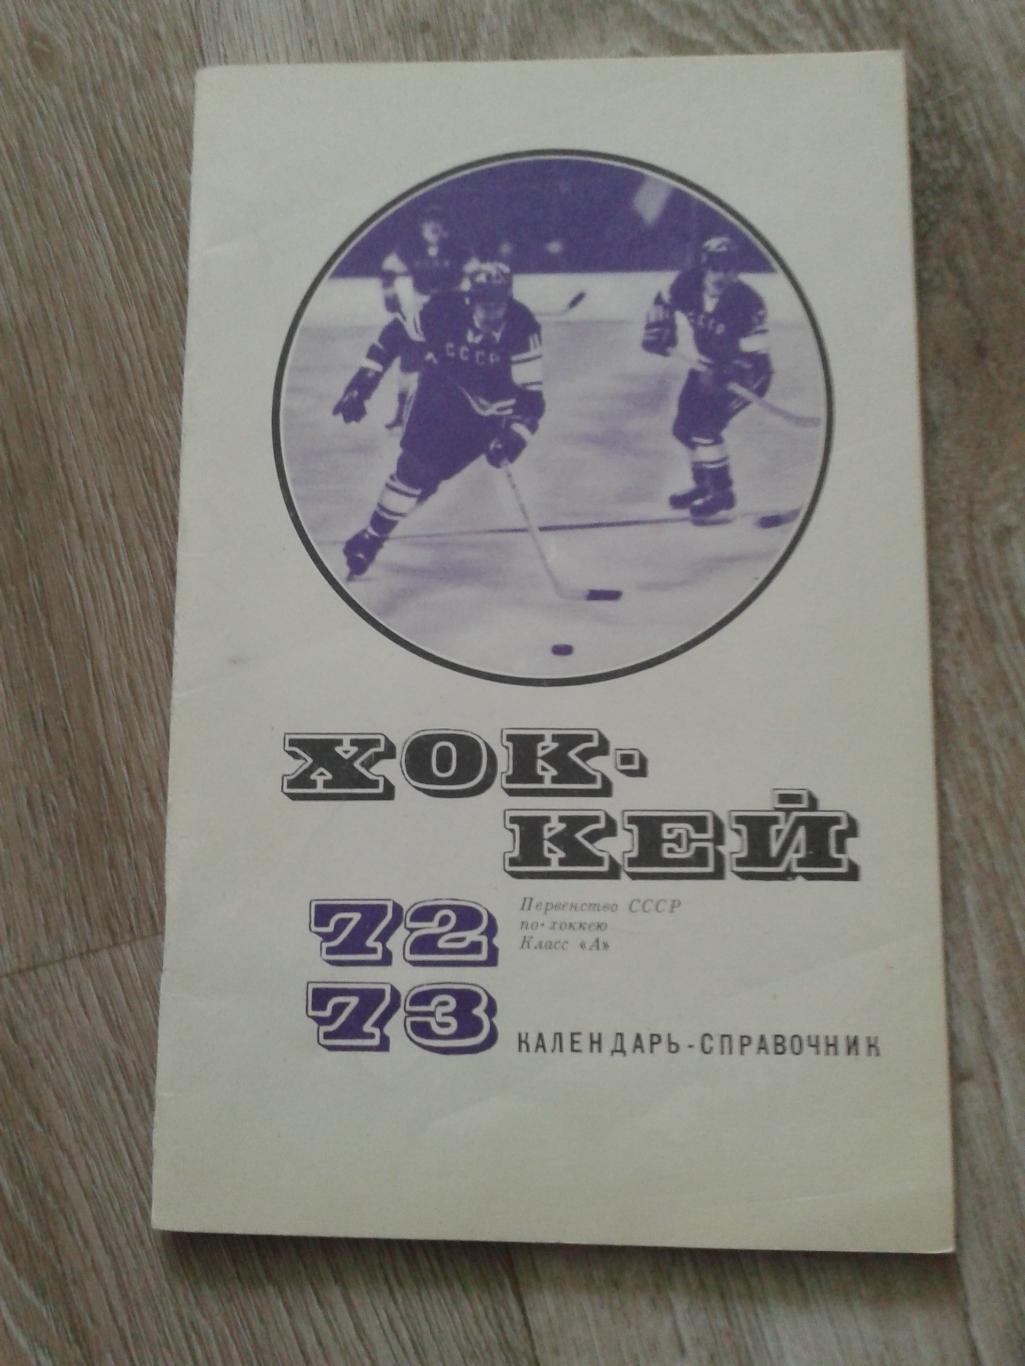 1972/1973 календарь-справочник Москва ФиС